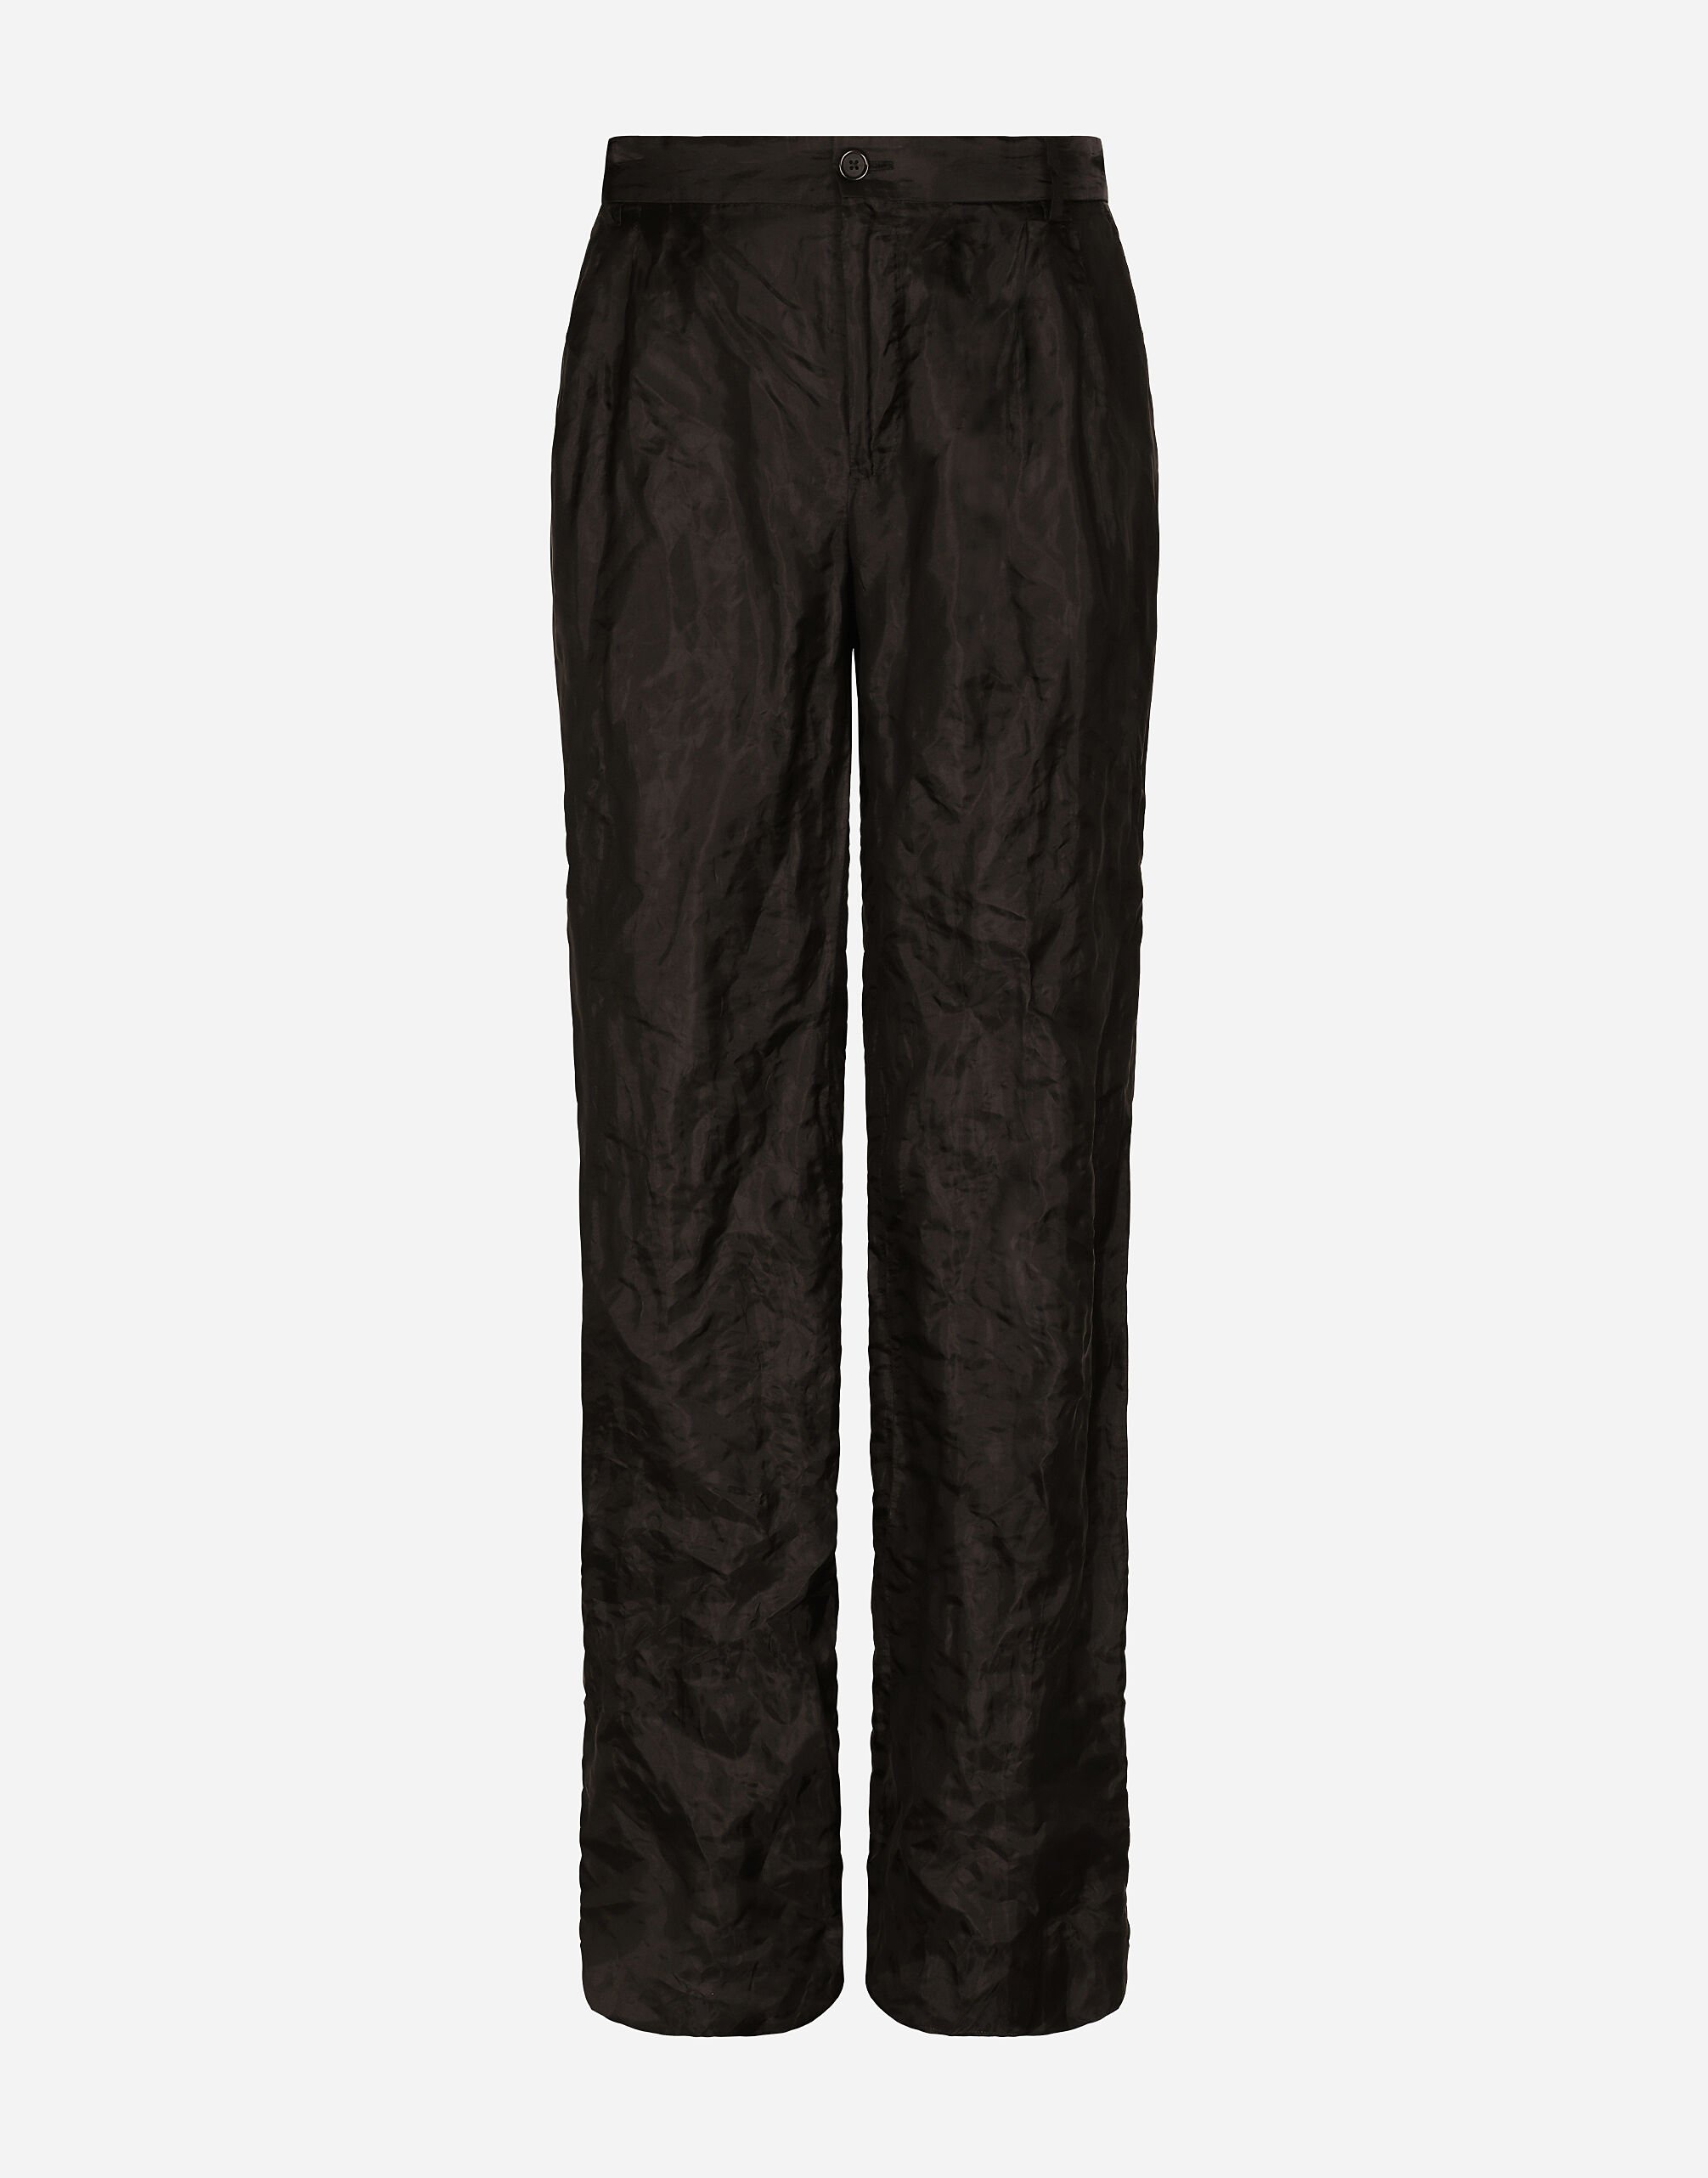 Dolce & Gabbana Pantalón de traje en tejido técnico metalizado y seda con pernera recta Negro G2PQ4TGG150